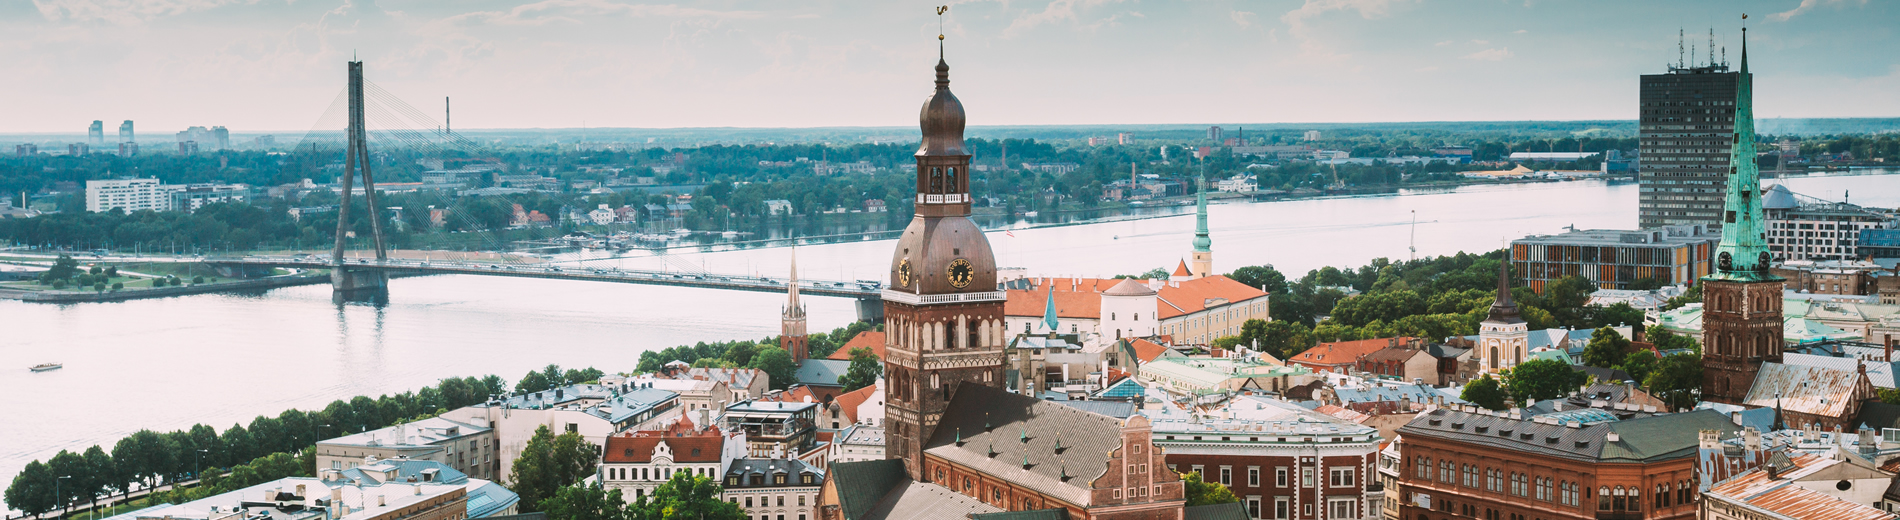 Riga-panorama